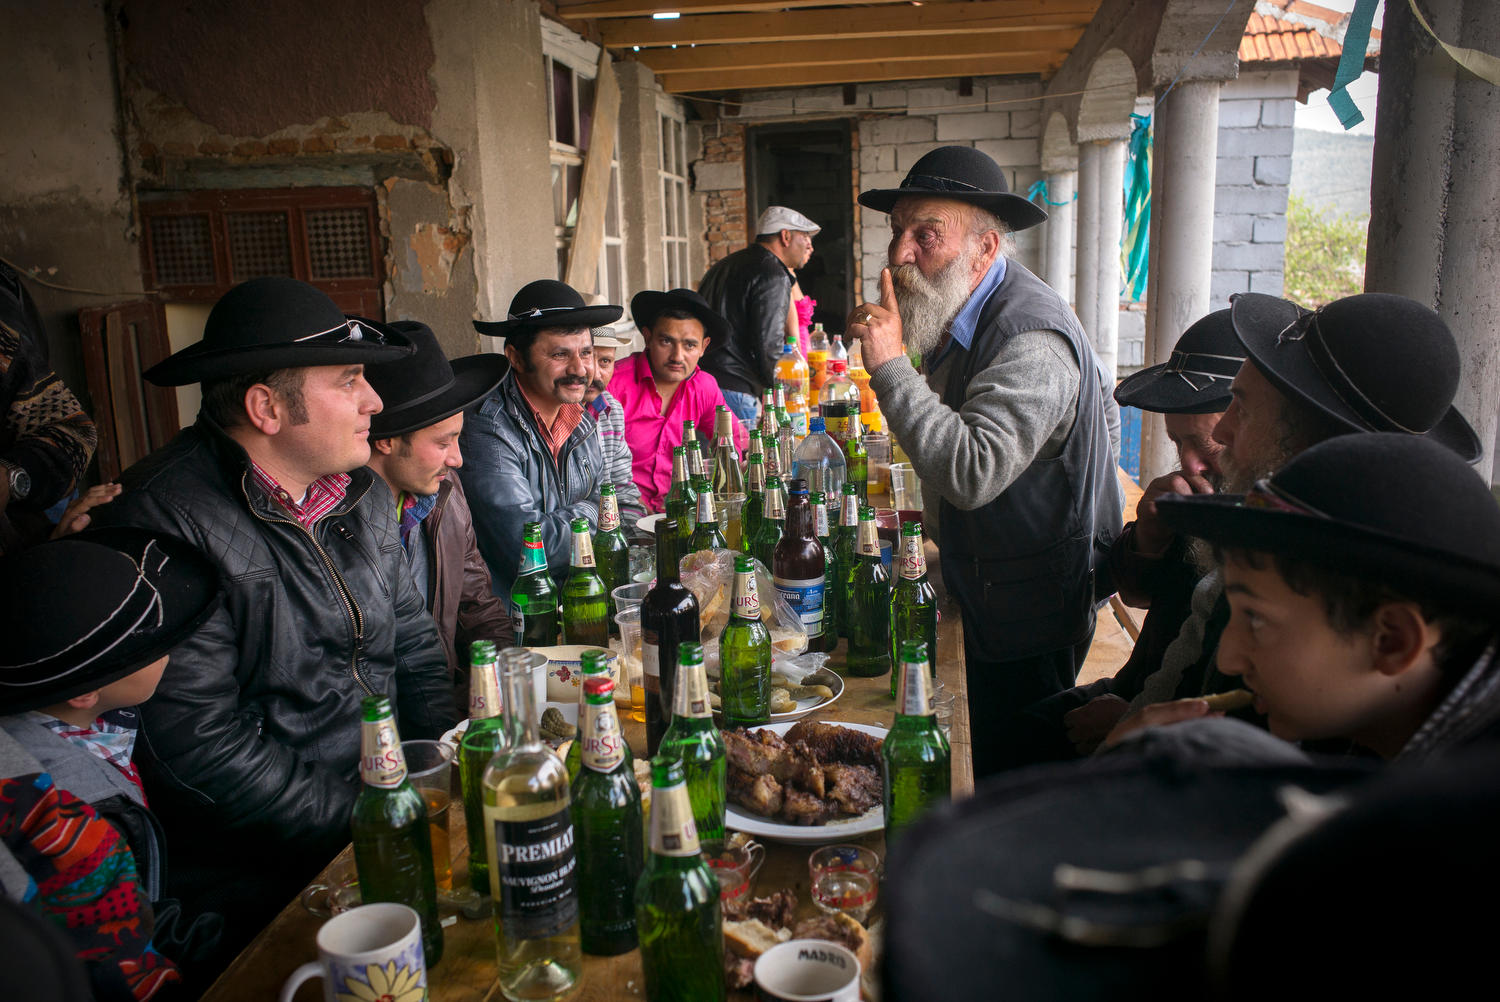 Männer sitzen während eines Festes an einem Tisch und essen und trinken.